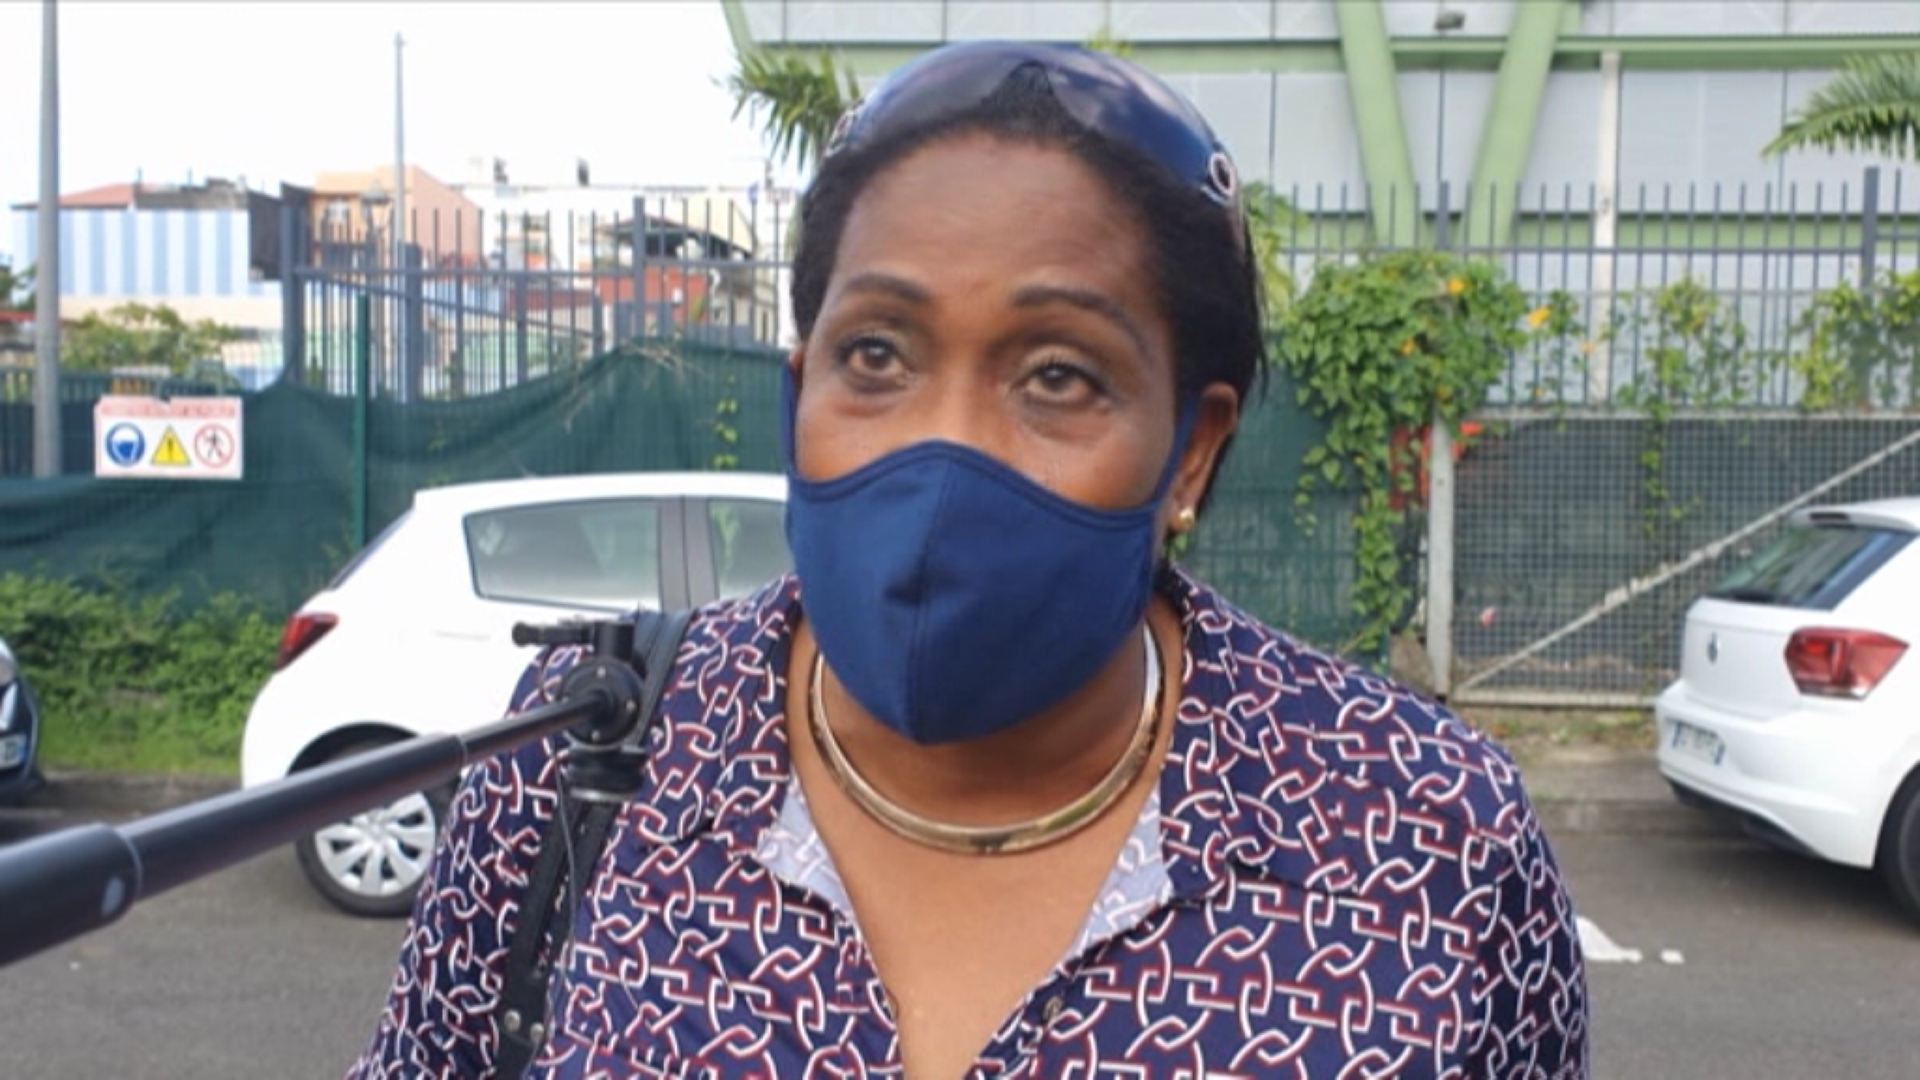 [Vidéo] Onews Martinique. Les martiniquaises sentent elles l agression des hommes dans leur quotidien?